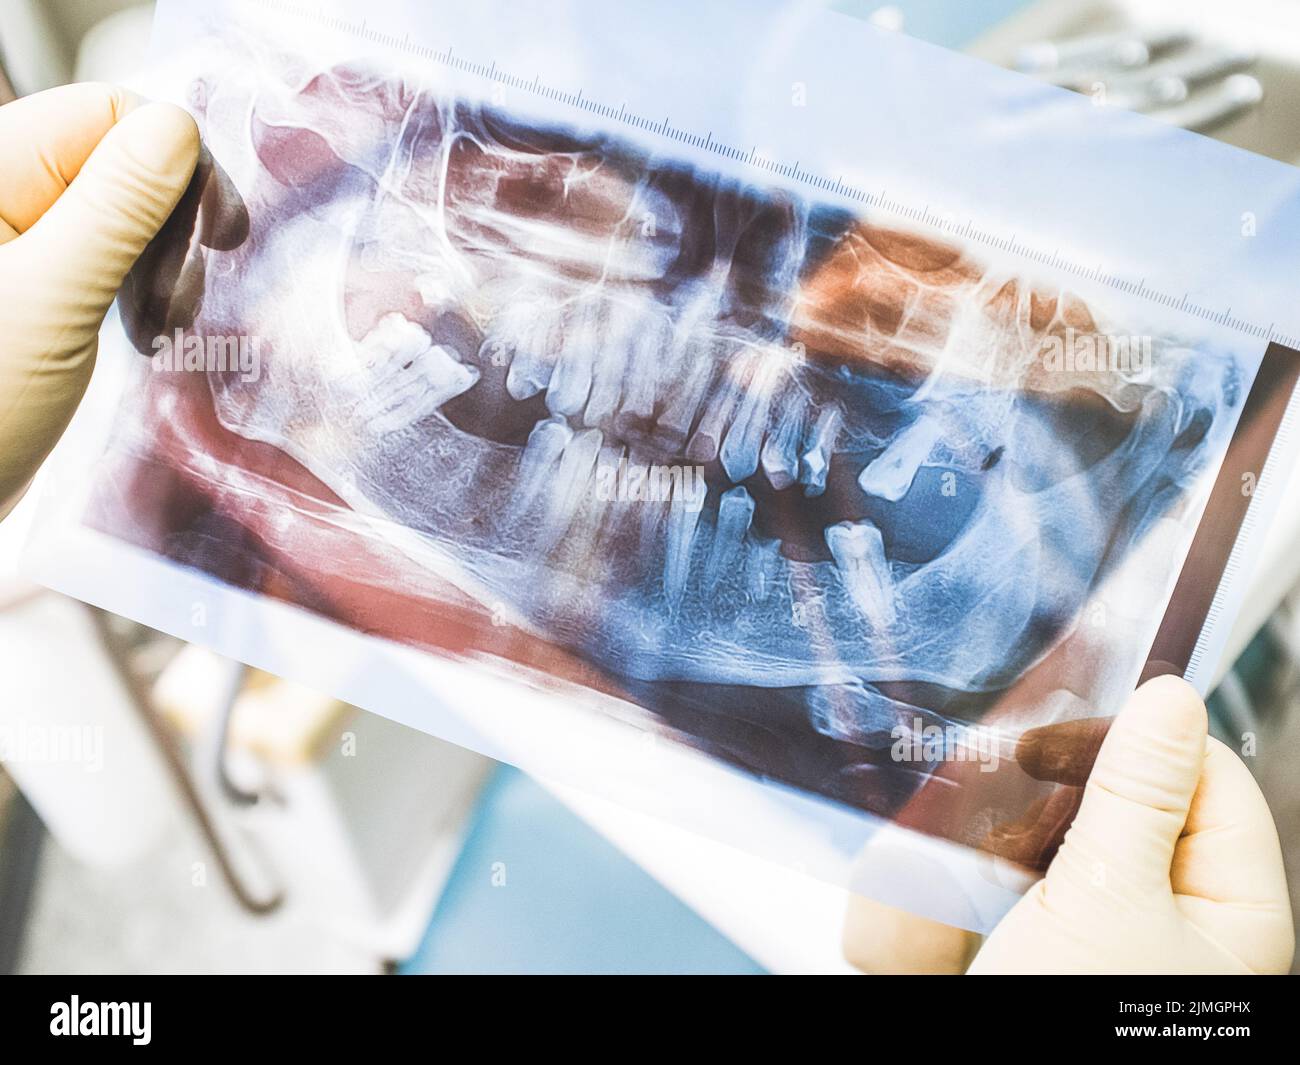 terapia implantare dentale agomfiasi a raggi x panoramici Foto Stock